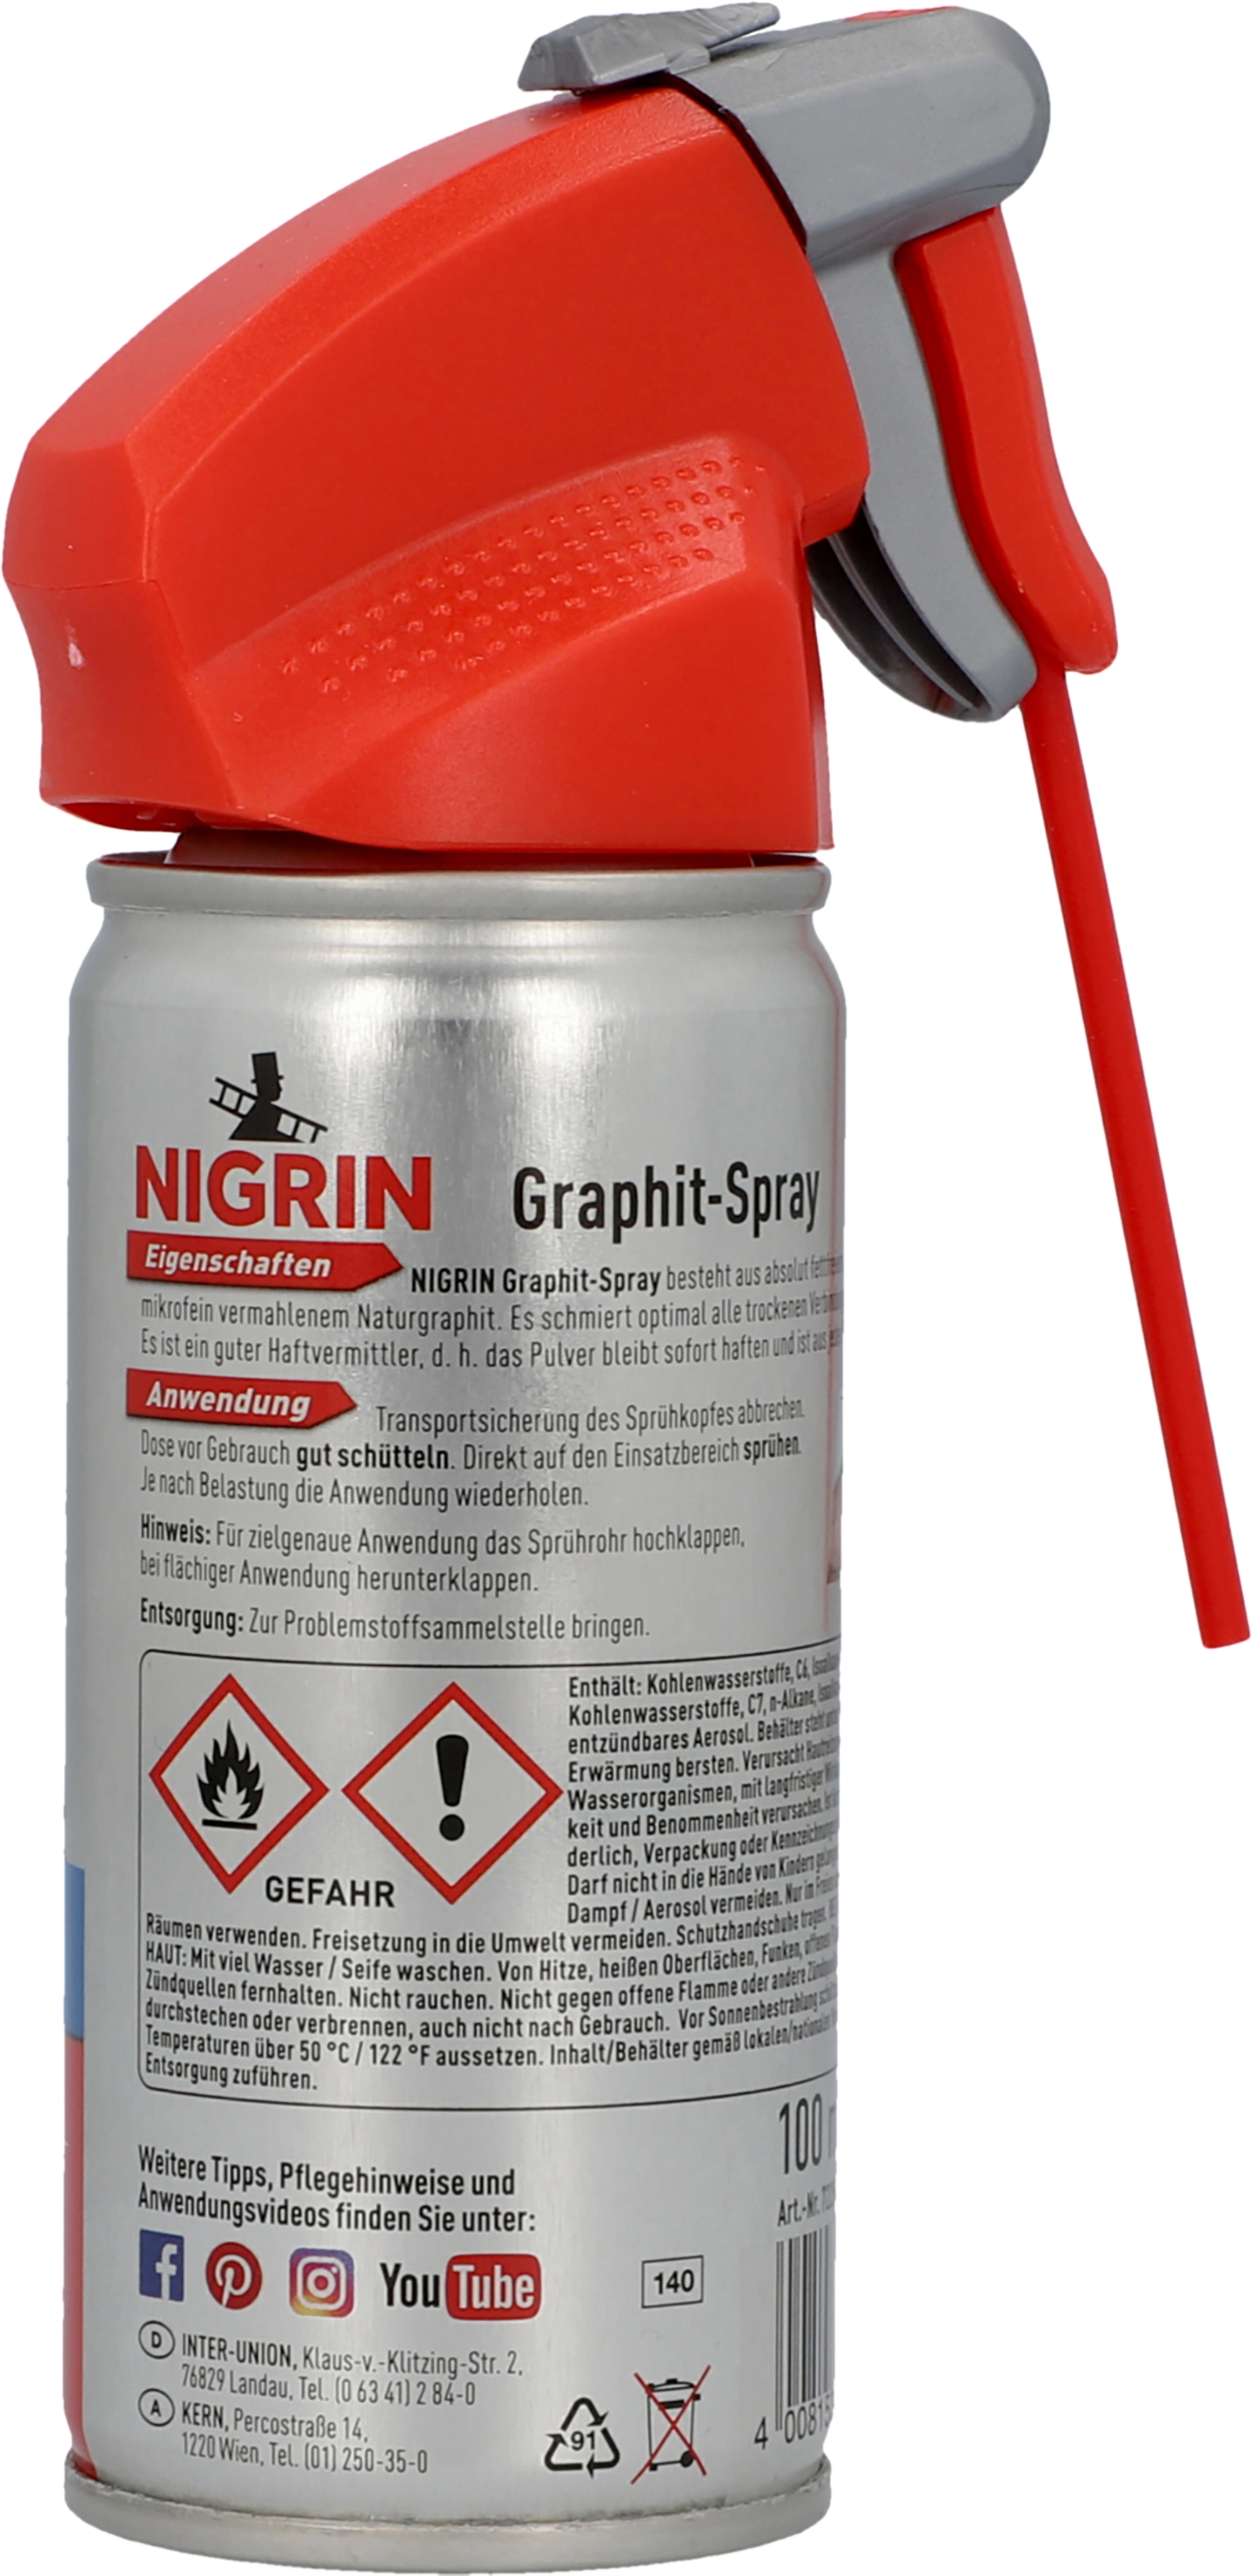 Nigrin Graphit-Spray 100 ml kaufen bei OBI